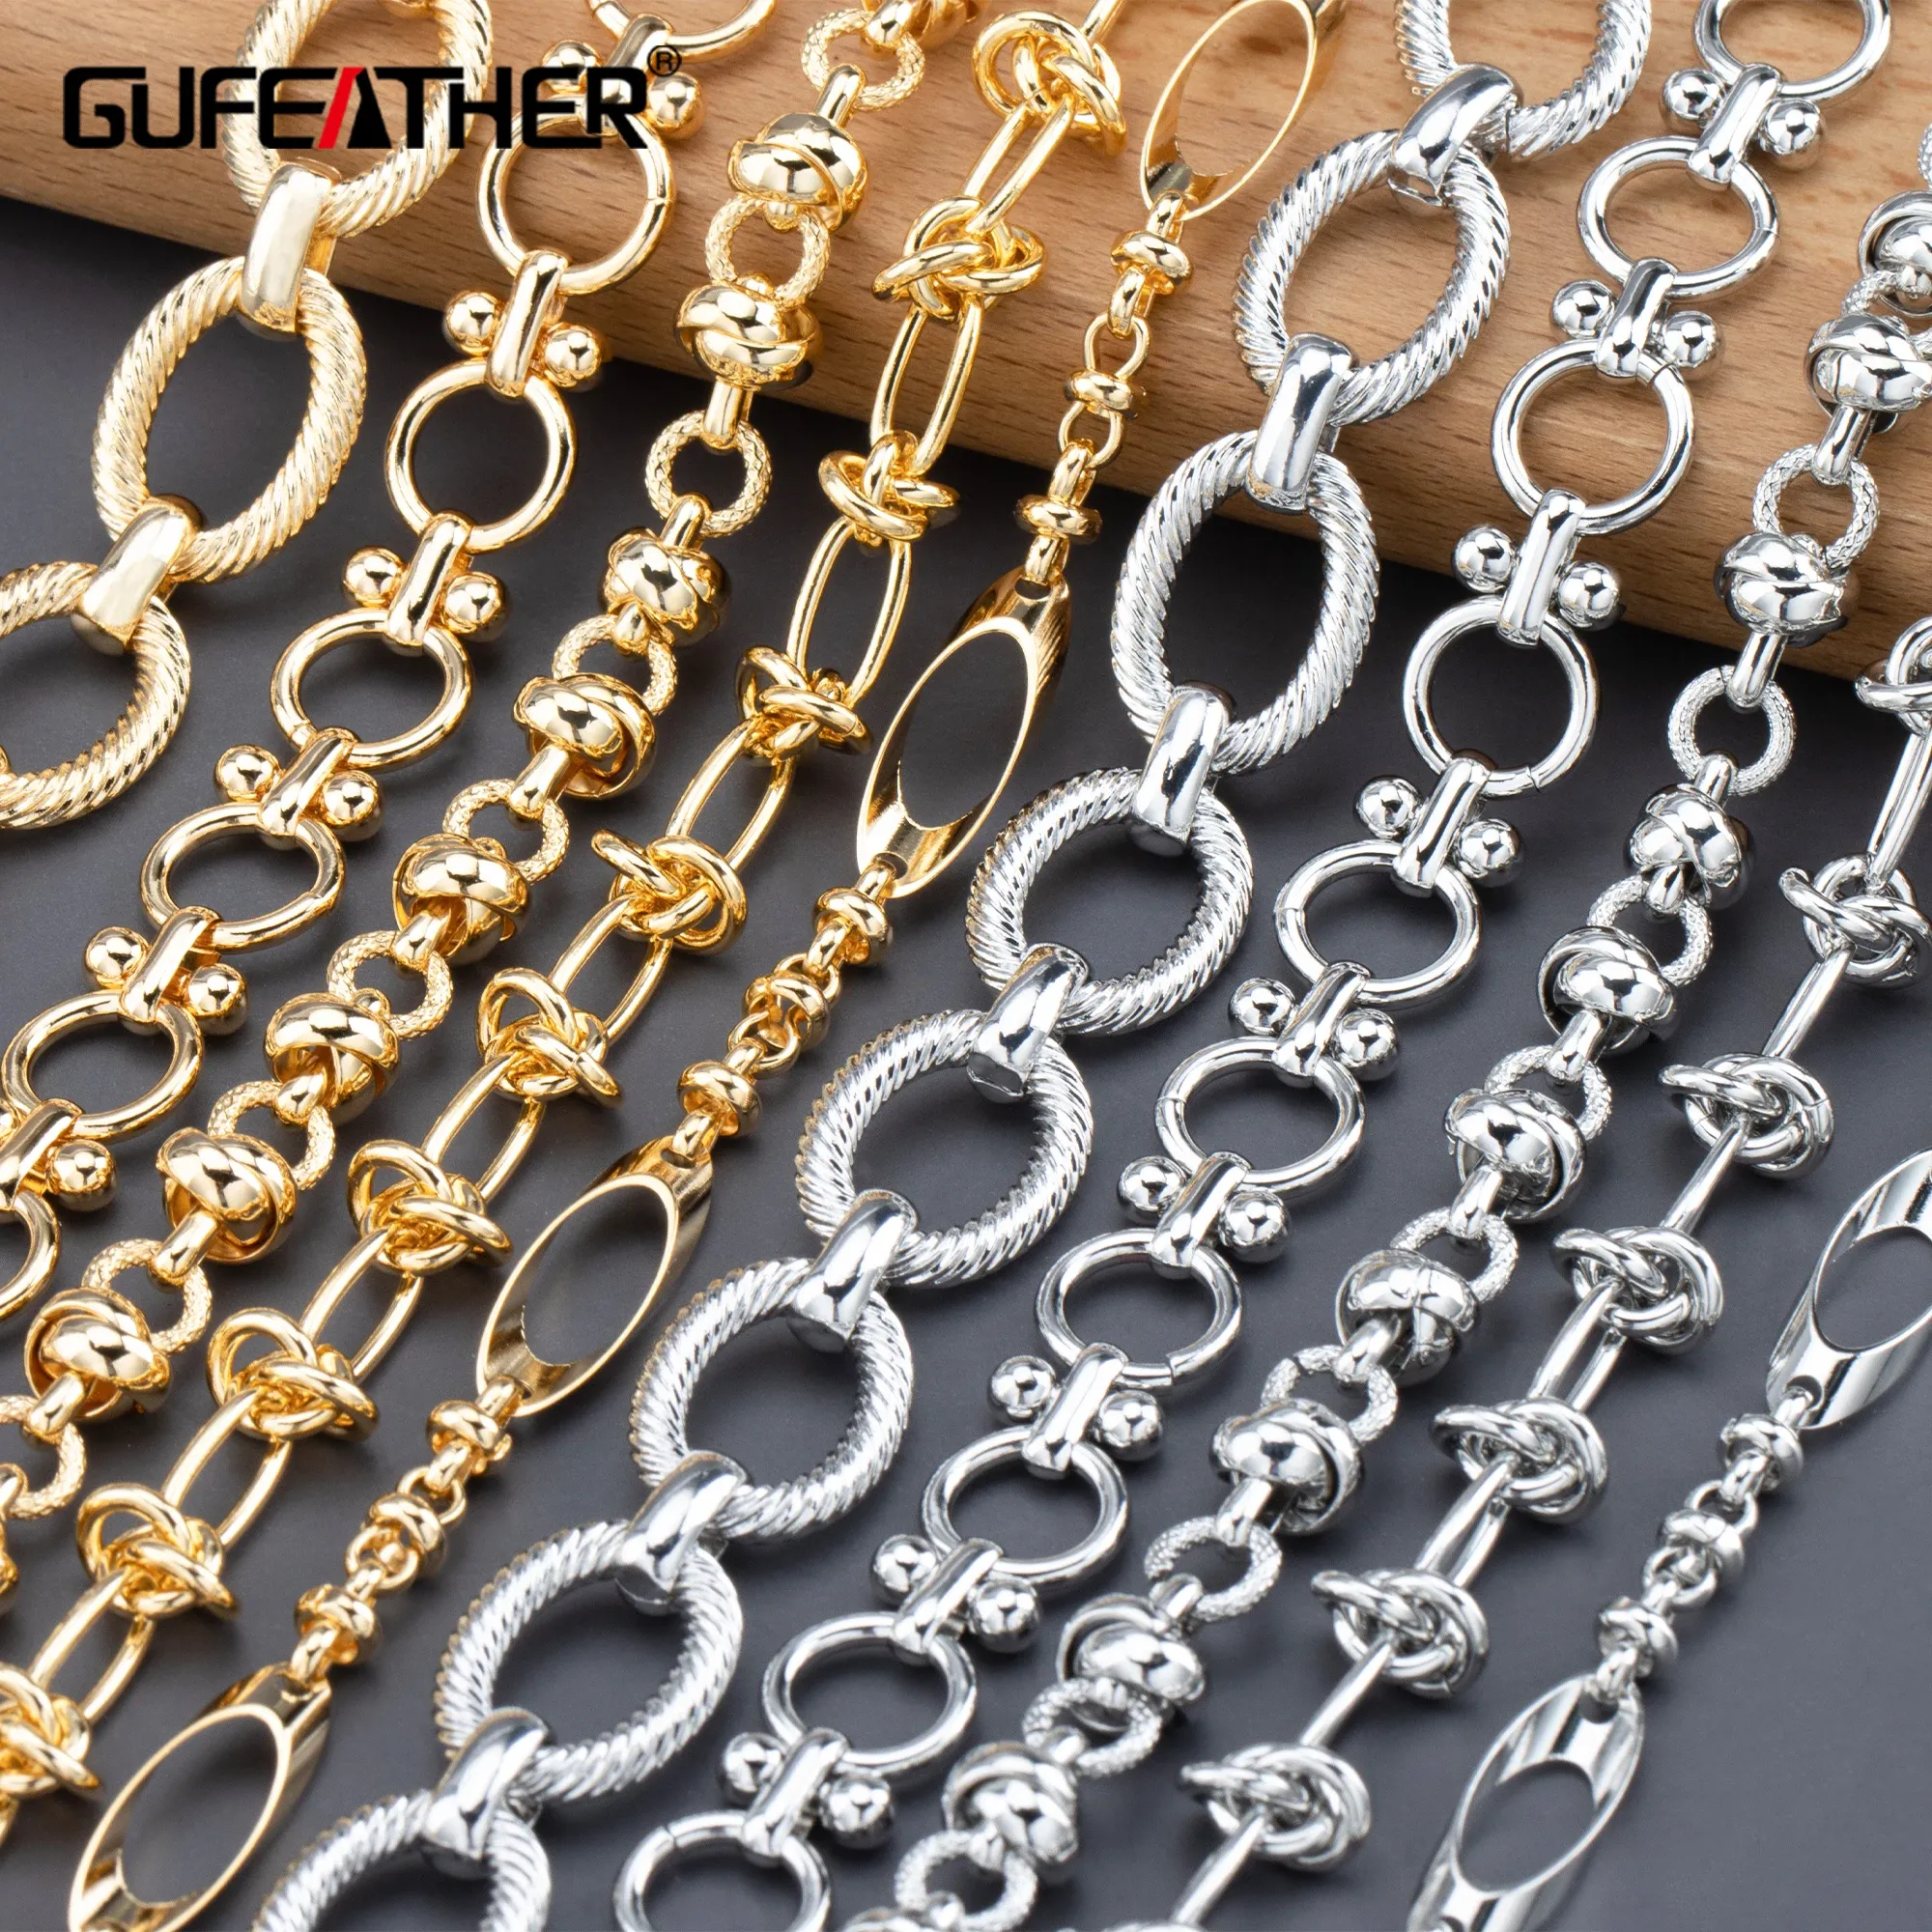 Brins Gufeather C145, chaîne de bricolage, pass de passe, sans nickel, rhodium en or 18k plaqué, fabriqué à la main, bijoux, collier de bracelet de bricolage, 1 m / lot